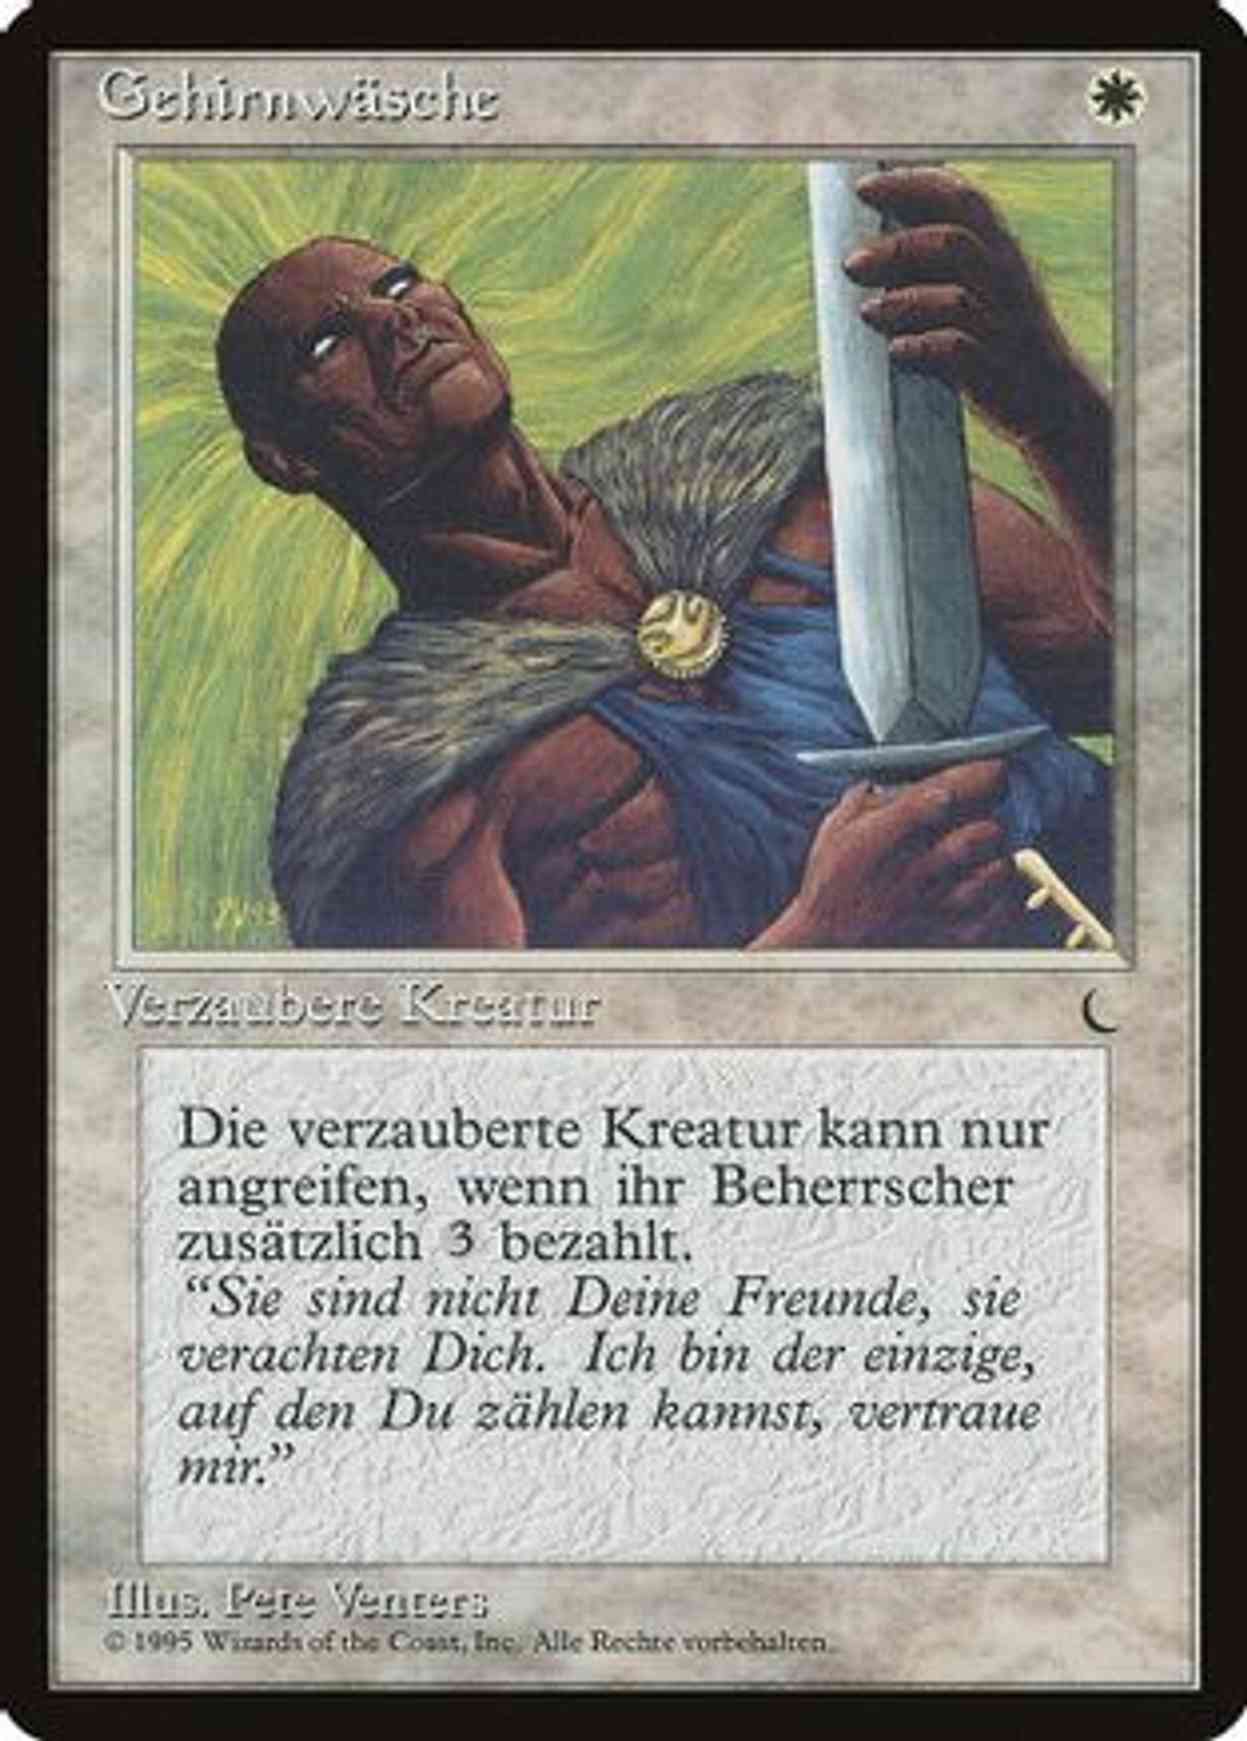 Brainwash (German) - "Gehirnwasche" magic card front